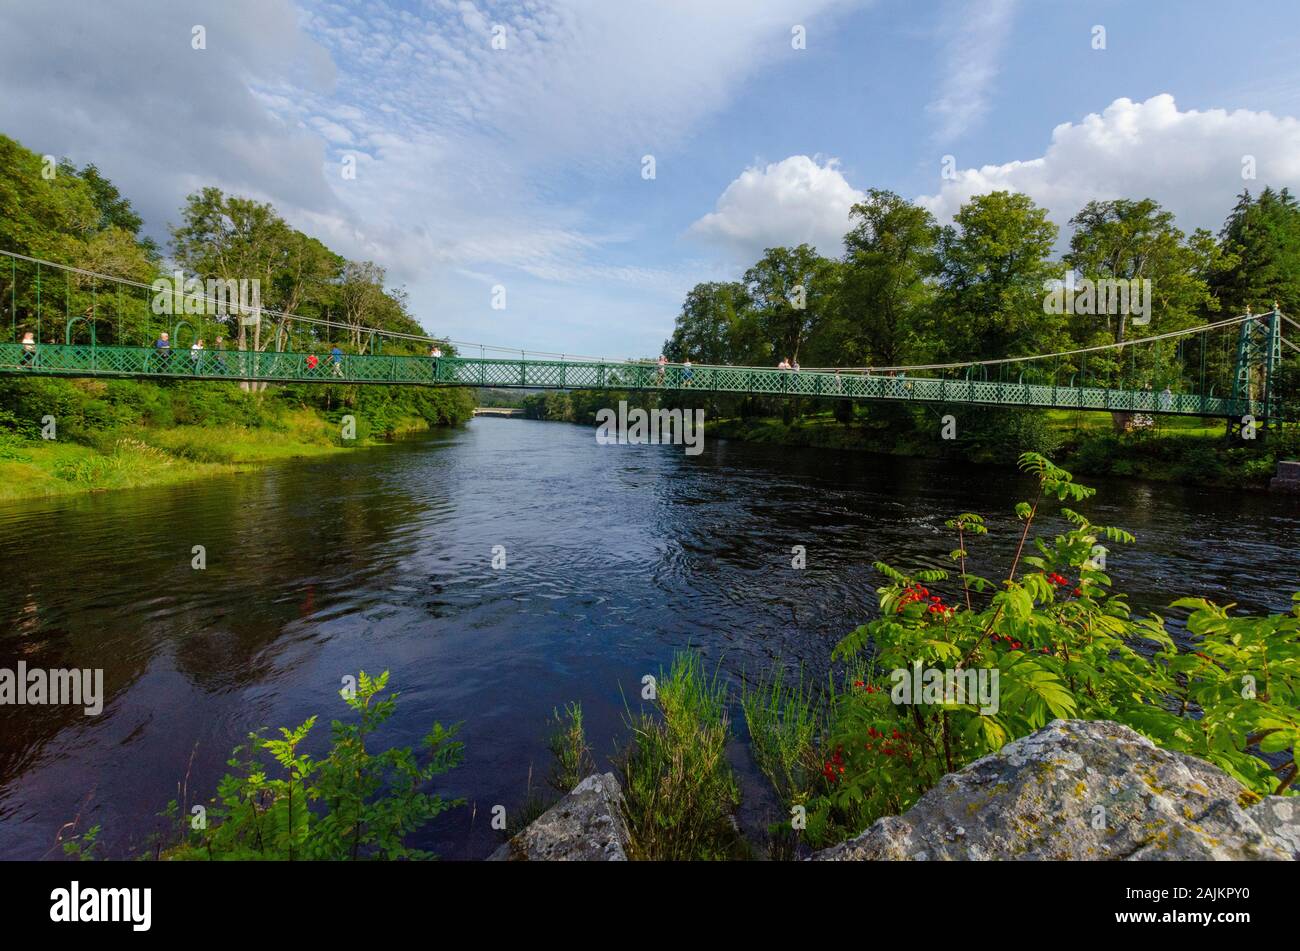 Passerelle sur la rivière Tay à Pitlochry Perthshire Scotland UK Banque D'Images